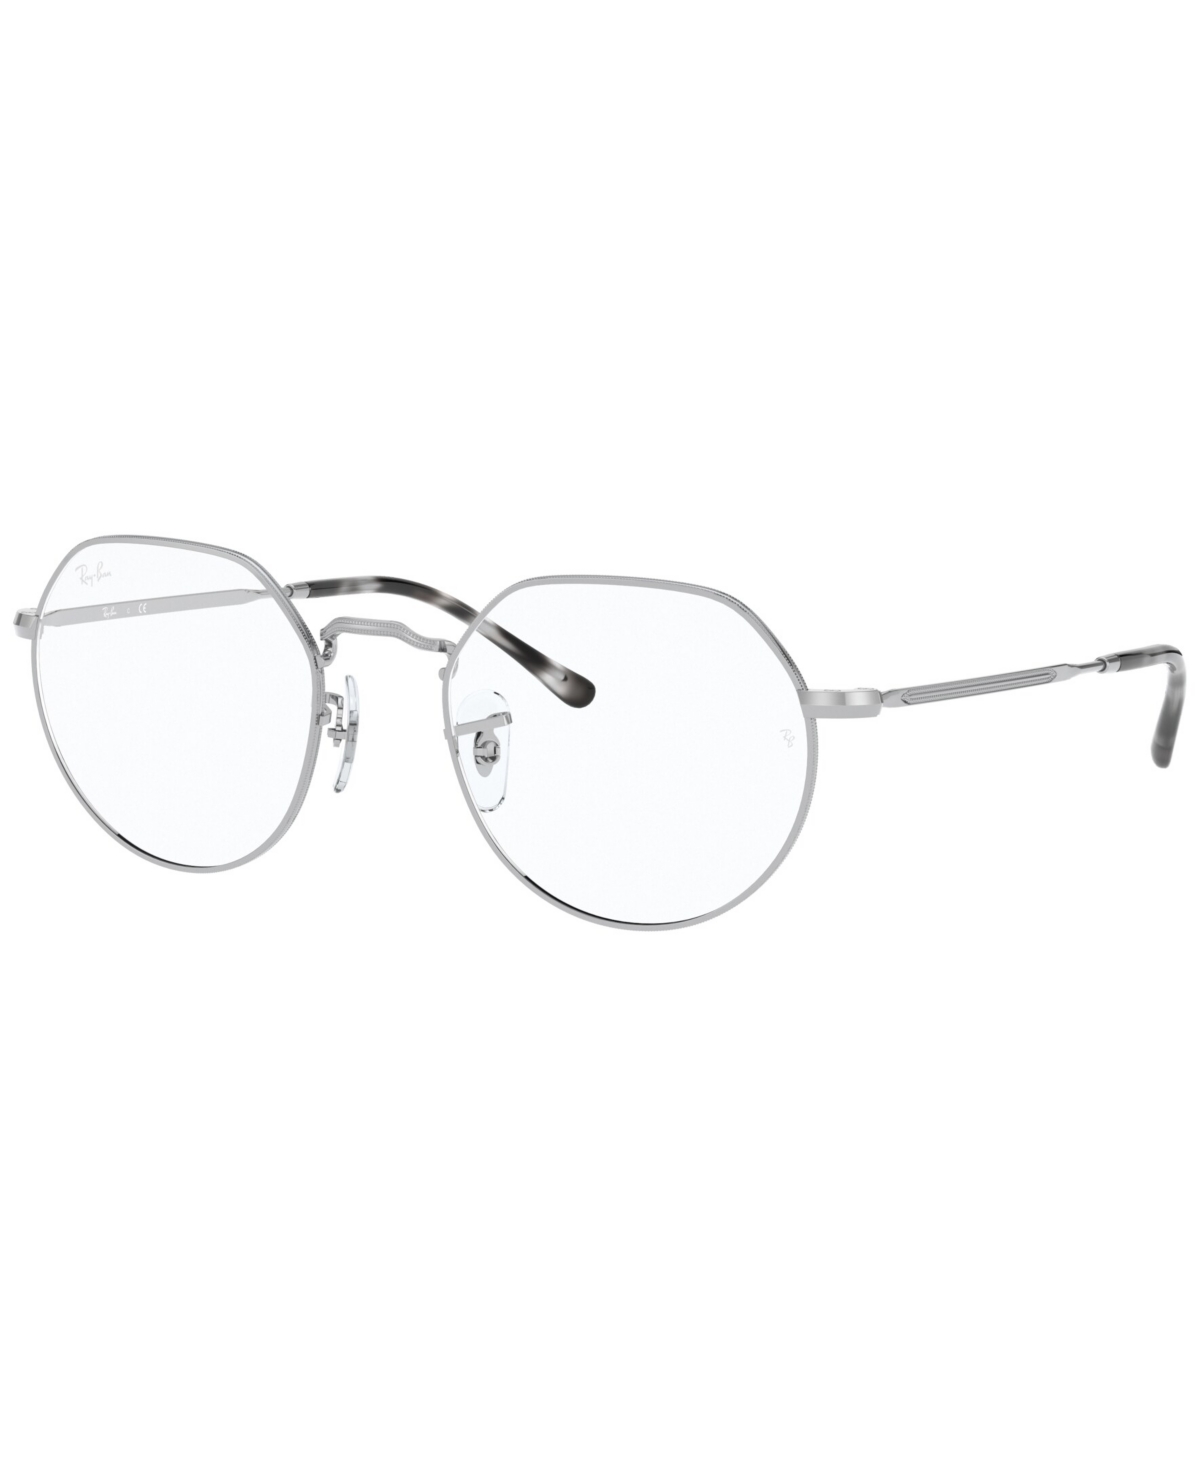 RB6465 Jack Unisex Irregular Eyeglasses - Petroleum on Arista